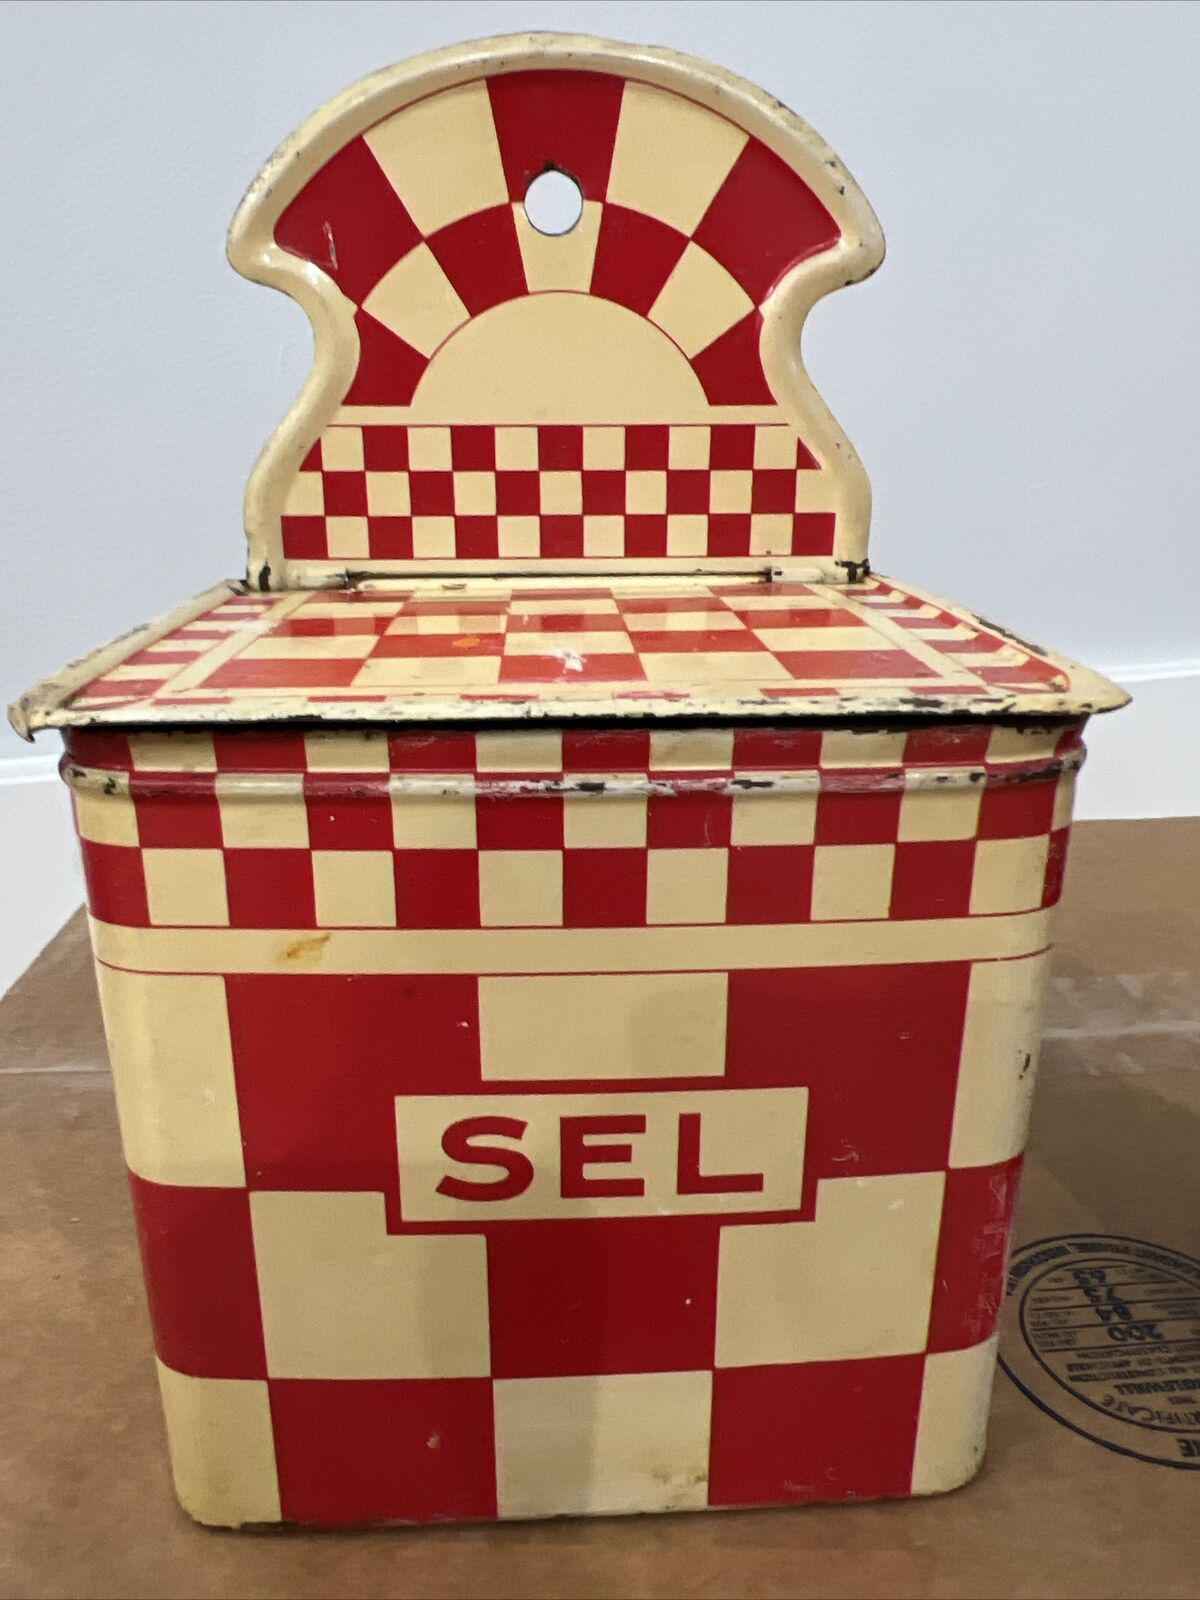 RED/IVORY TIN french enamelwareSEL SALT BOX